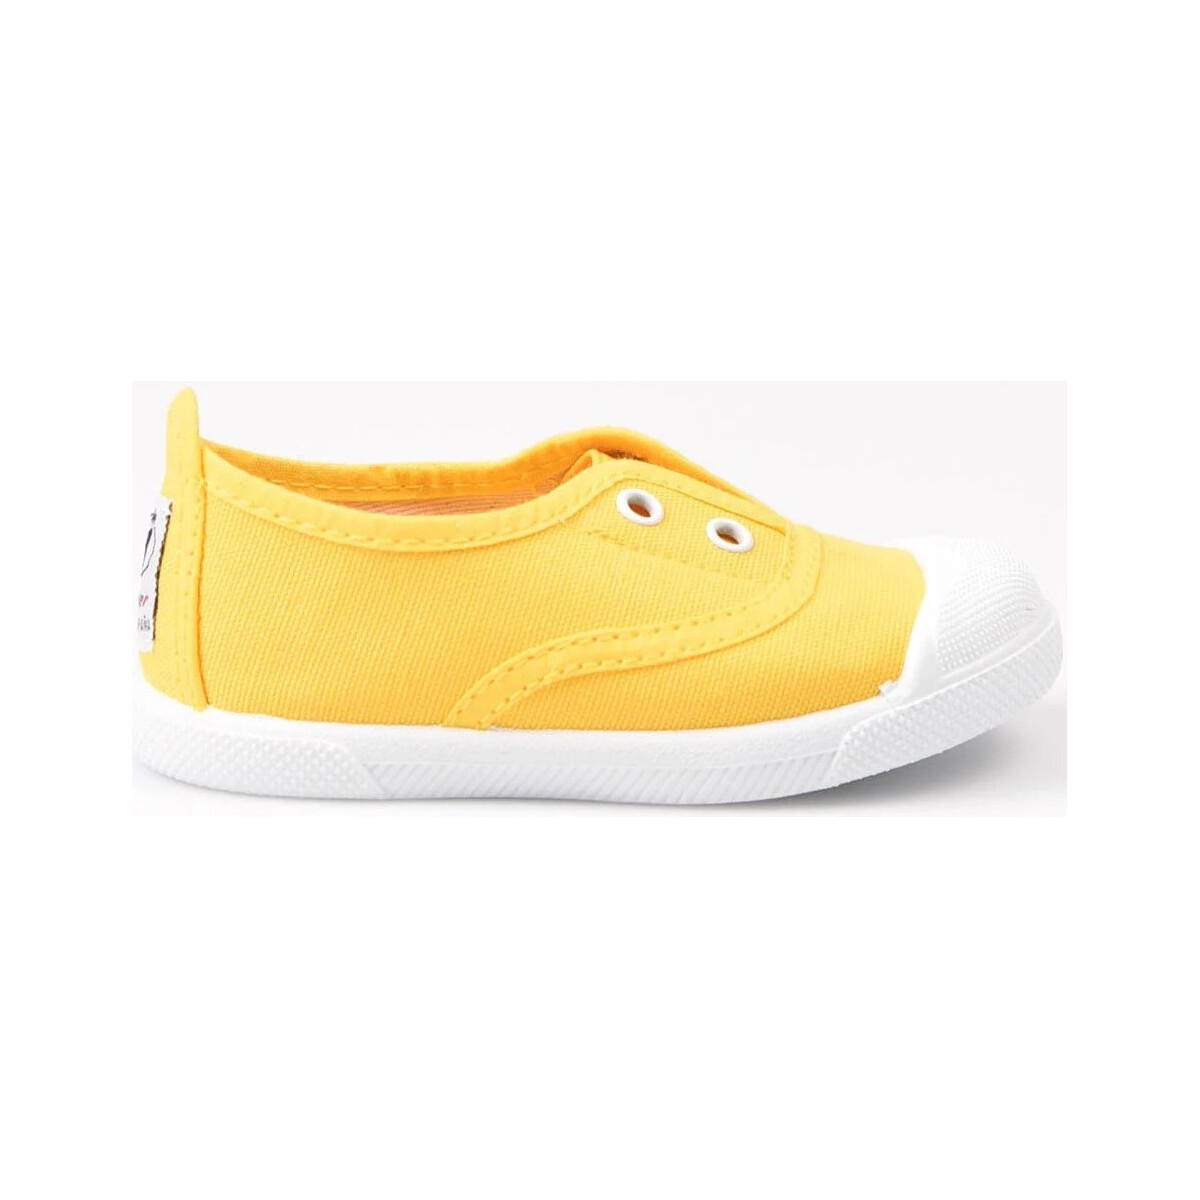 Zapatos Niños Derbie & Richelieu Javer Zapatillas  150 Amarillo Amarillo